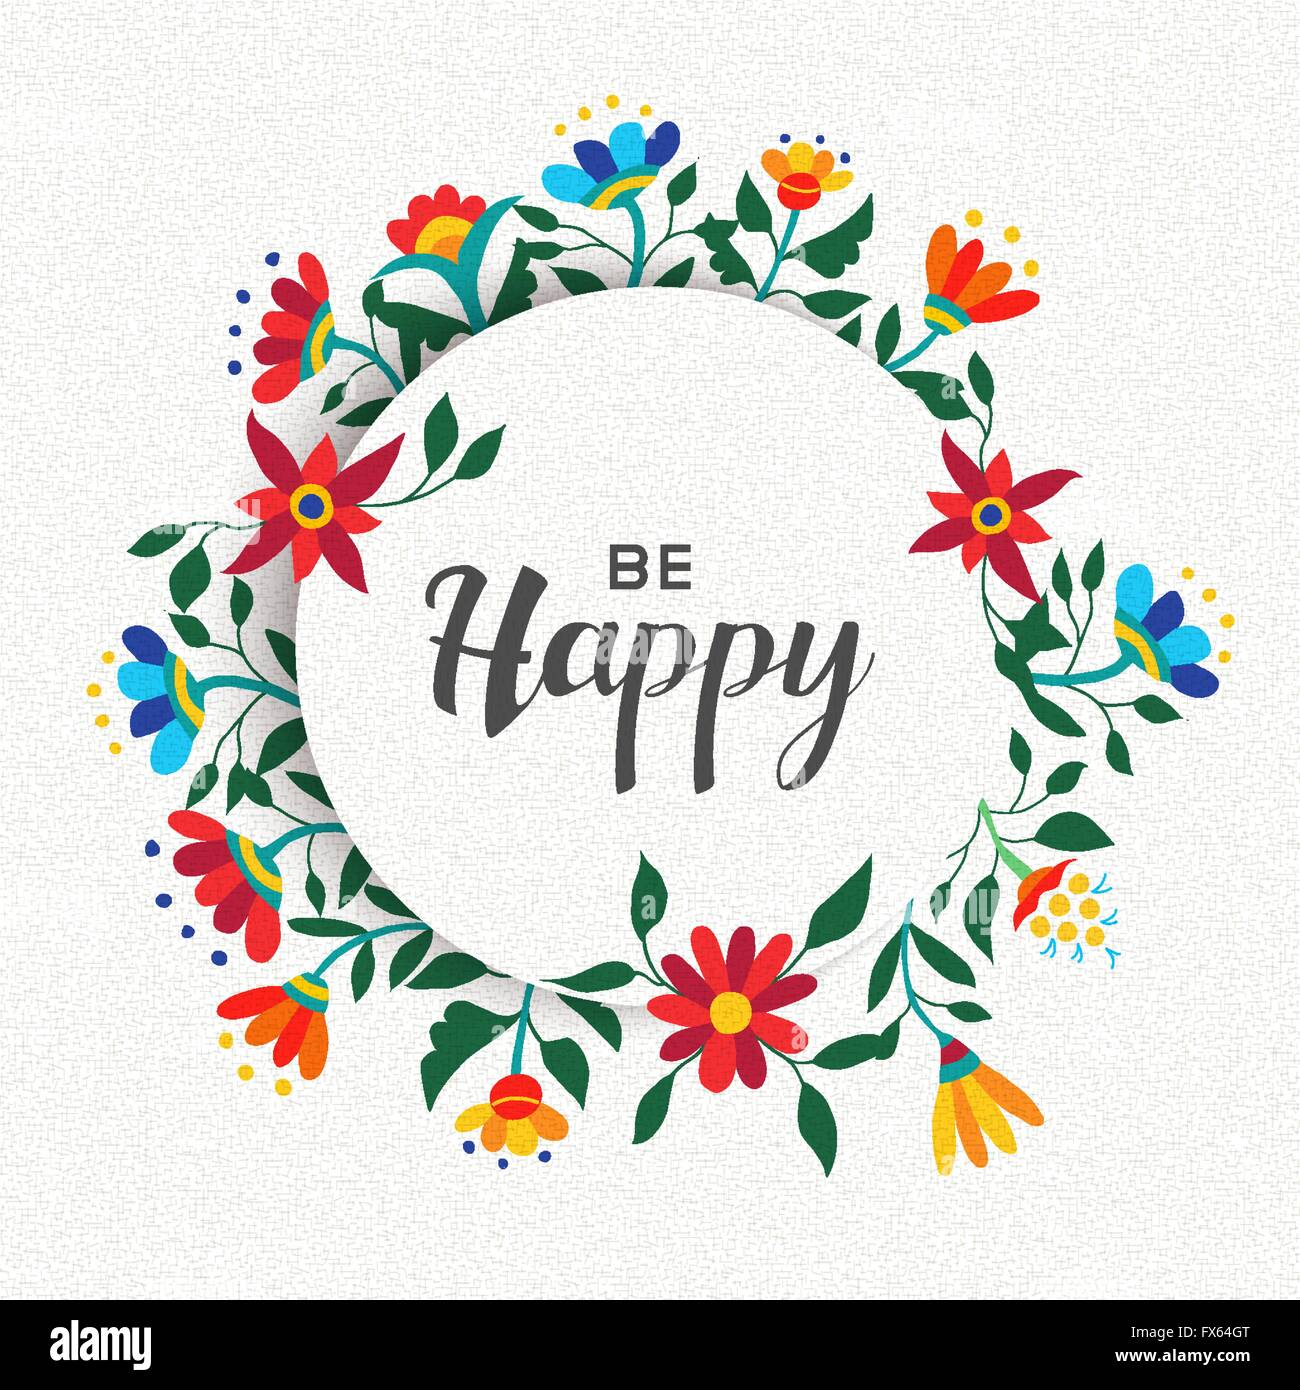 Essere felice preventivo design poster, ispirazione positivo il messaggio con il tempo primaverile ghirlanda di fiori decorazione. EPS10 vettore. Illustrazione Vettoriale